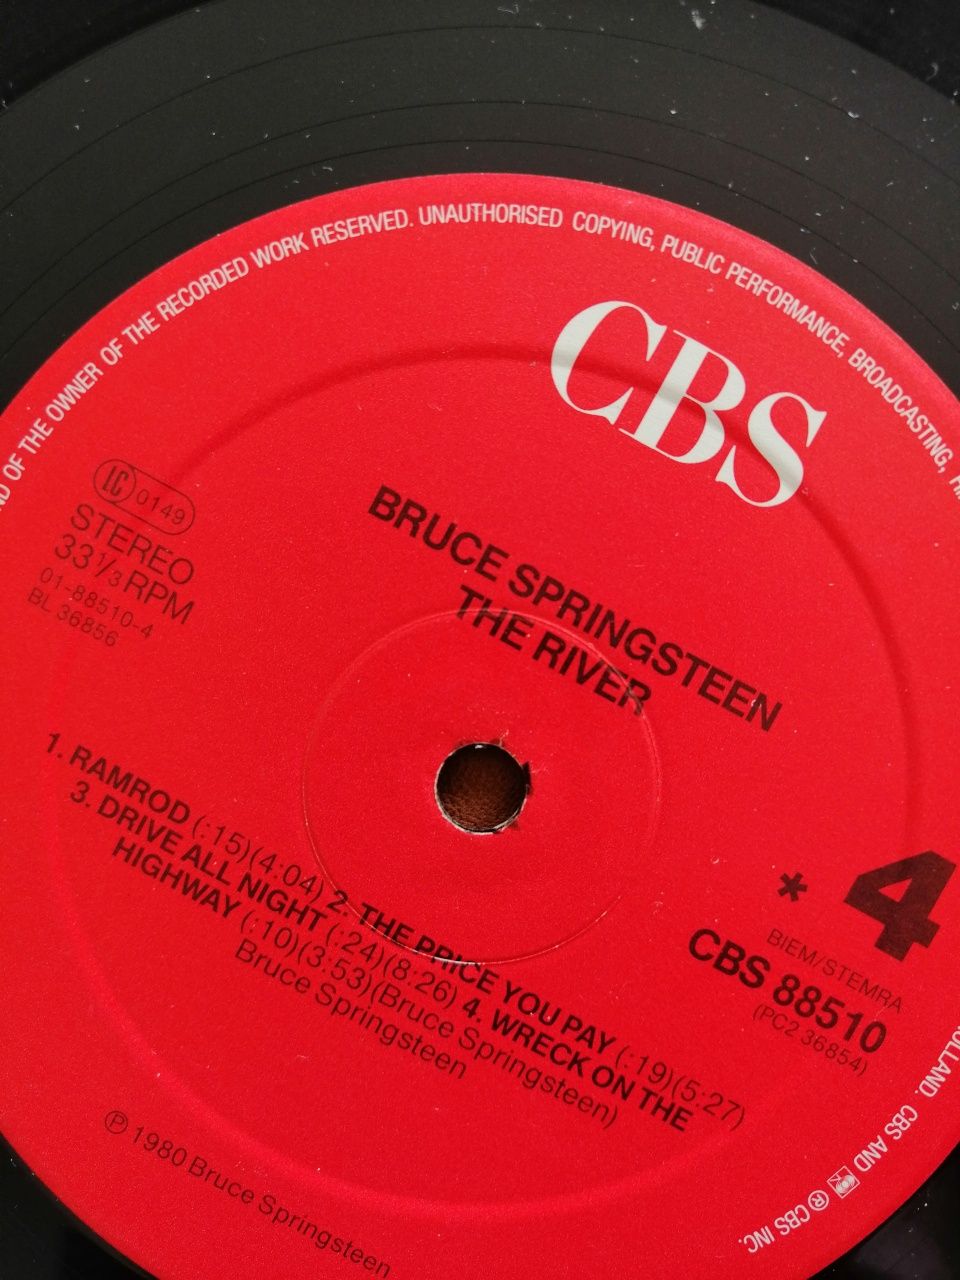 Vinyl Bruce Springsteen